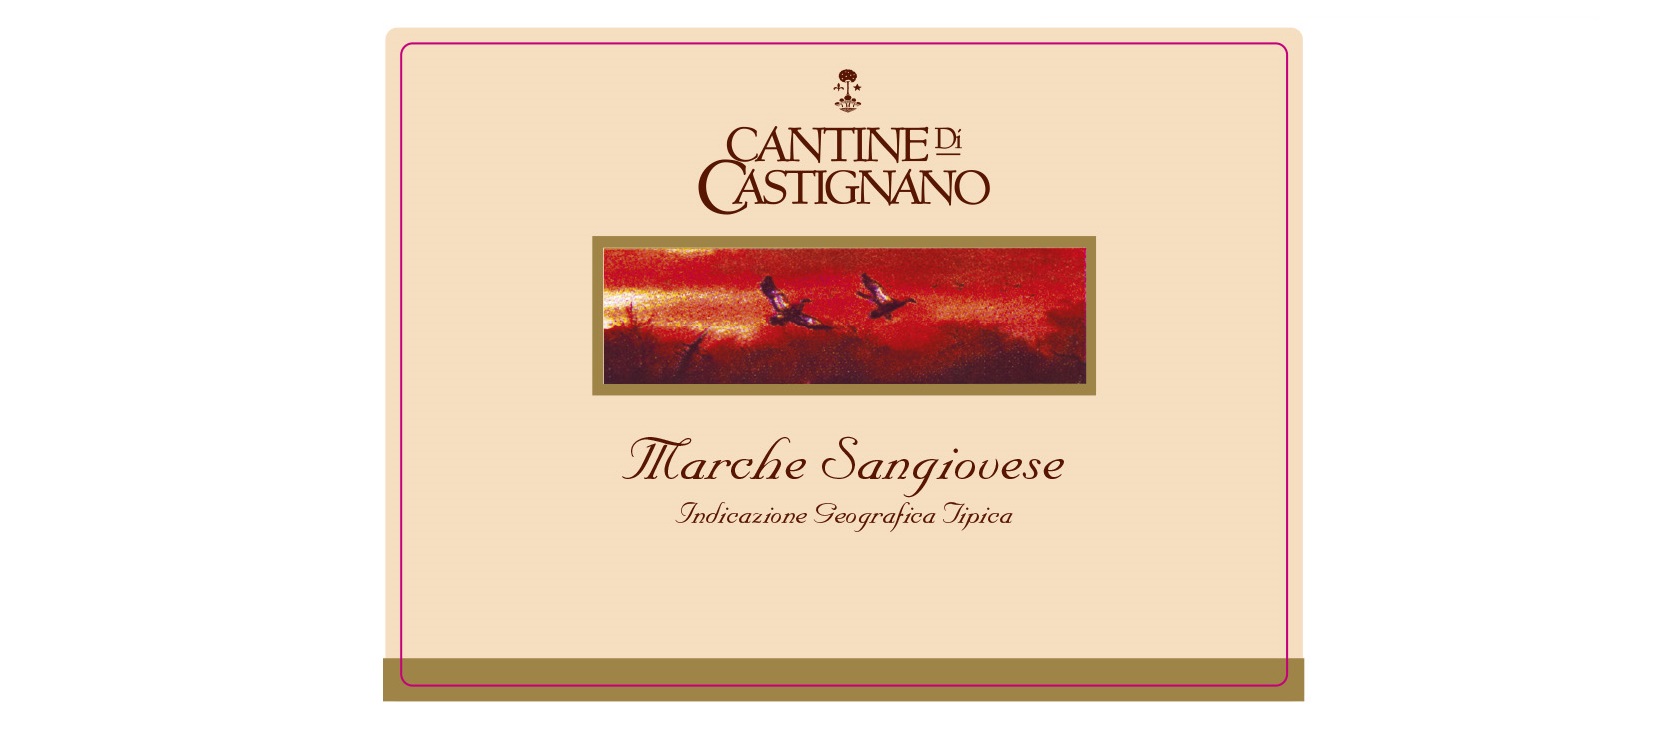 Cantine di Castignano Marche Sangiovese IGT